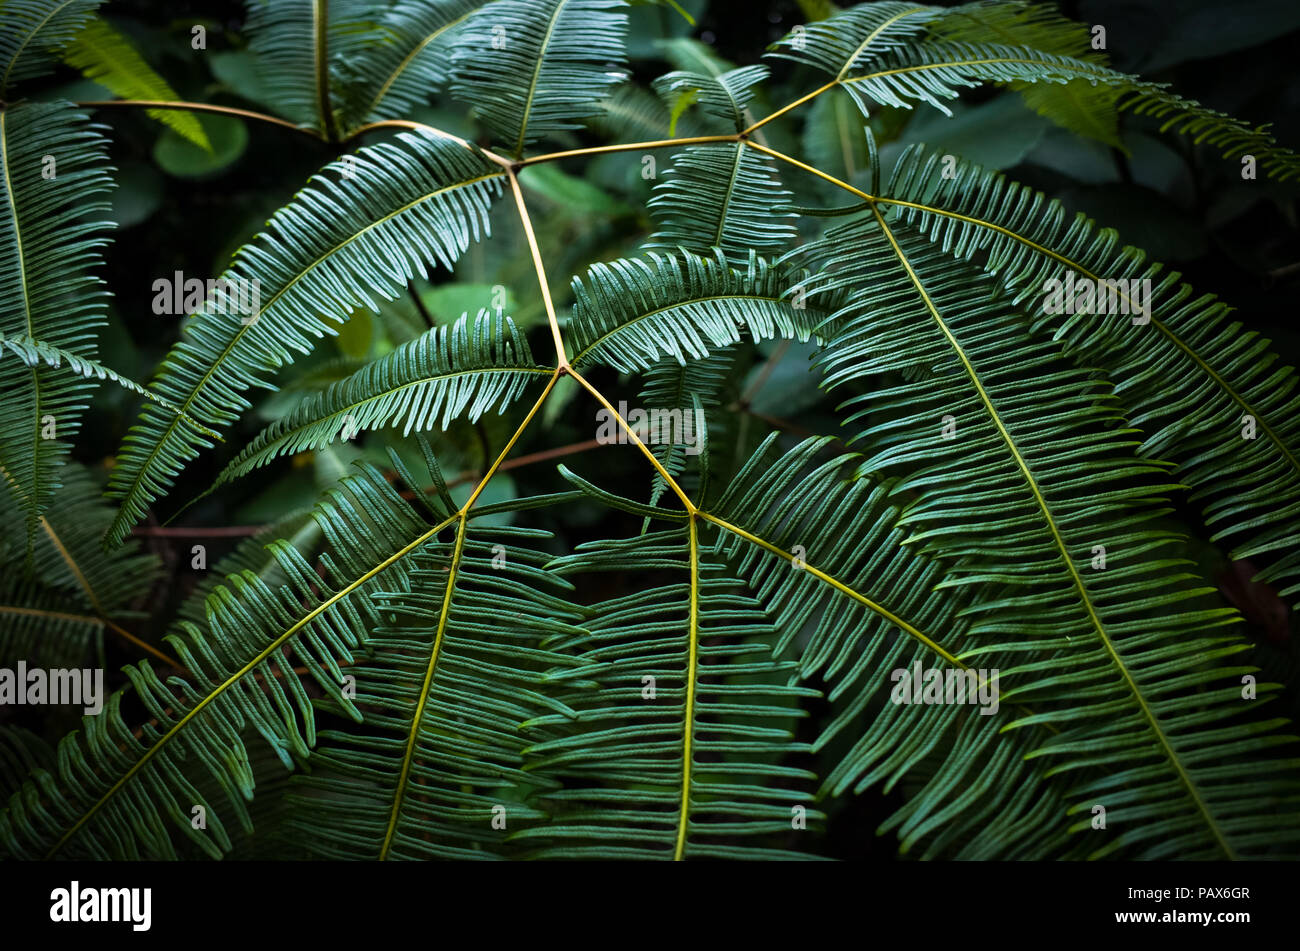 Jungle fern with star pattern, Bukit Batok Nature Park, Singapore Stock Photo